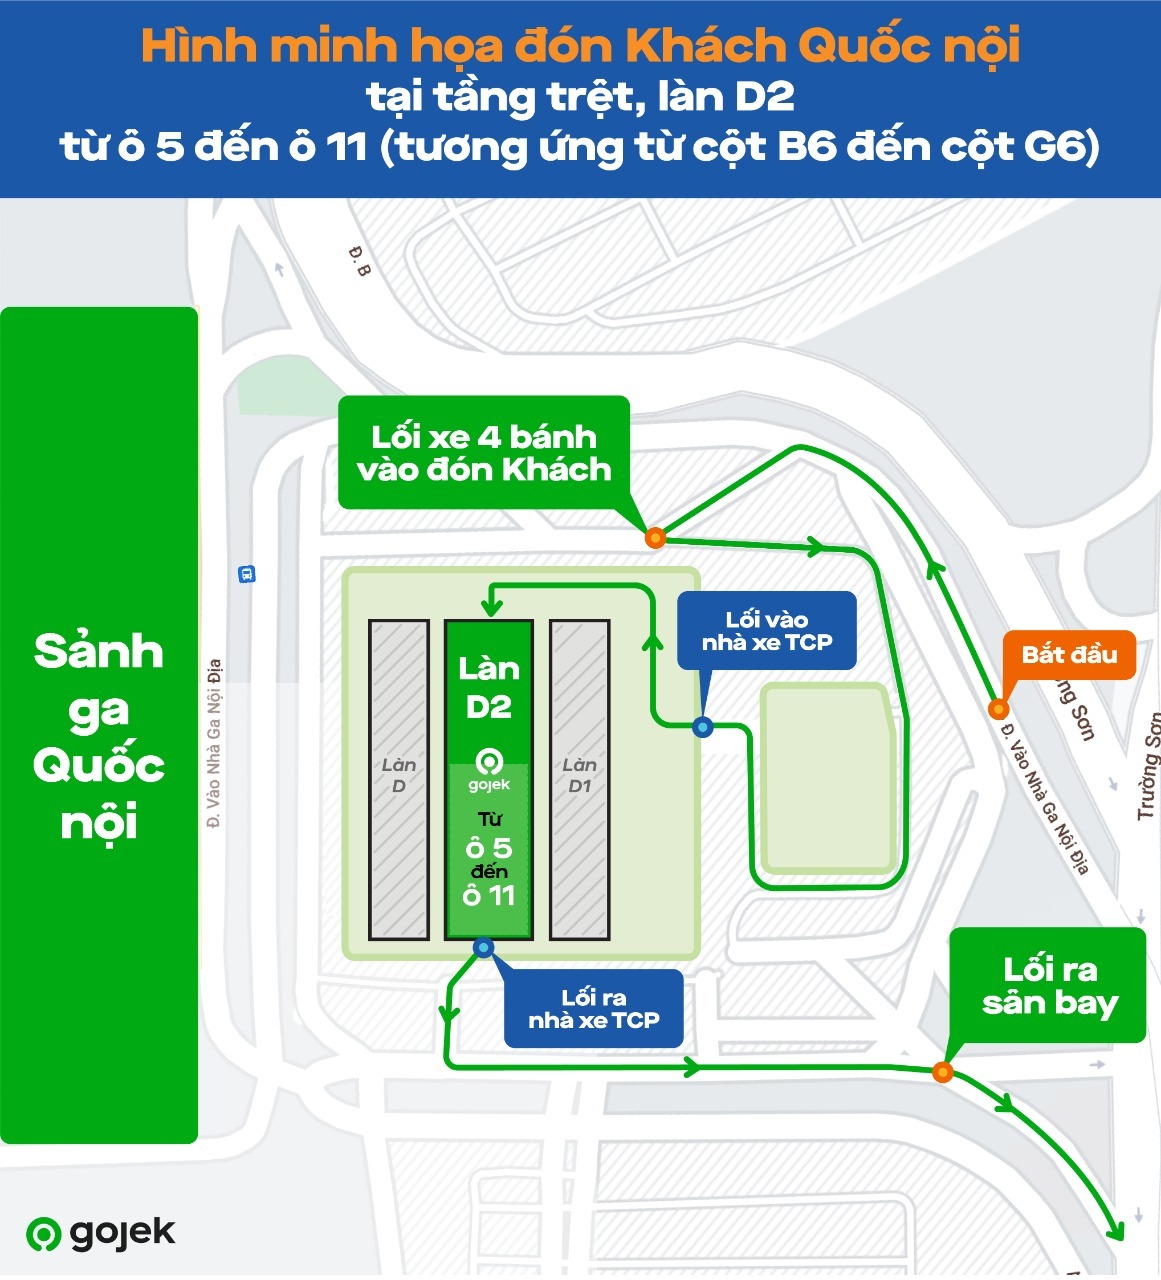 Gojek chính thức triển khai GoCar đưa đón khách tại làn D2 ở sân bay Tân Sơn Nhất